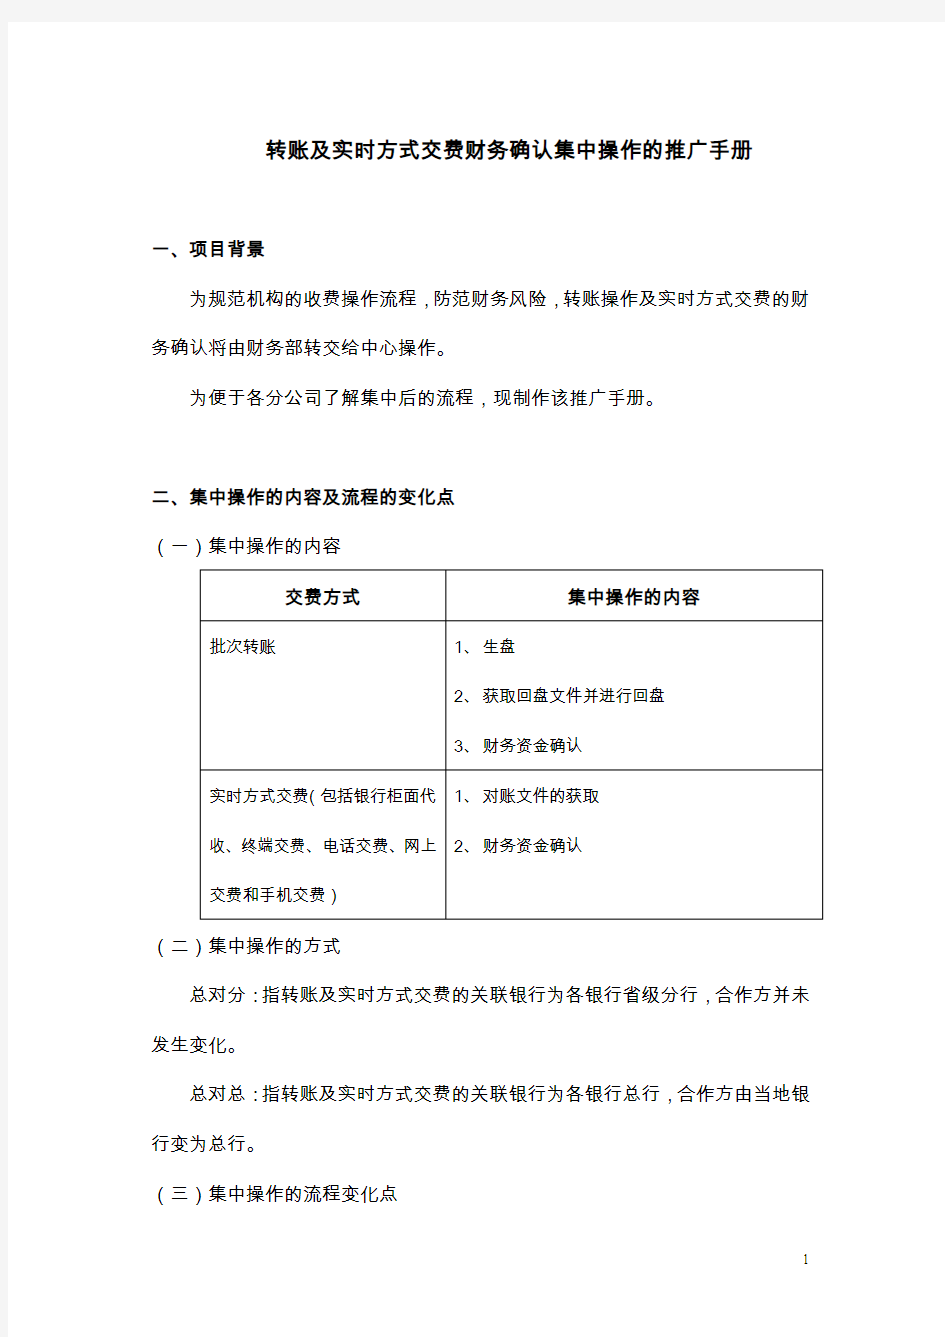 中国平安保险业务员注意事项--银行集中转账操作手册